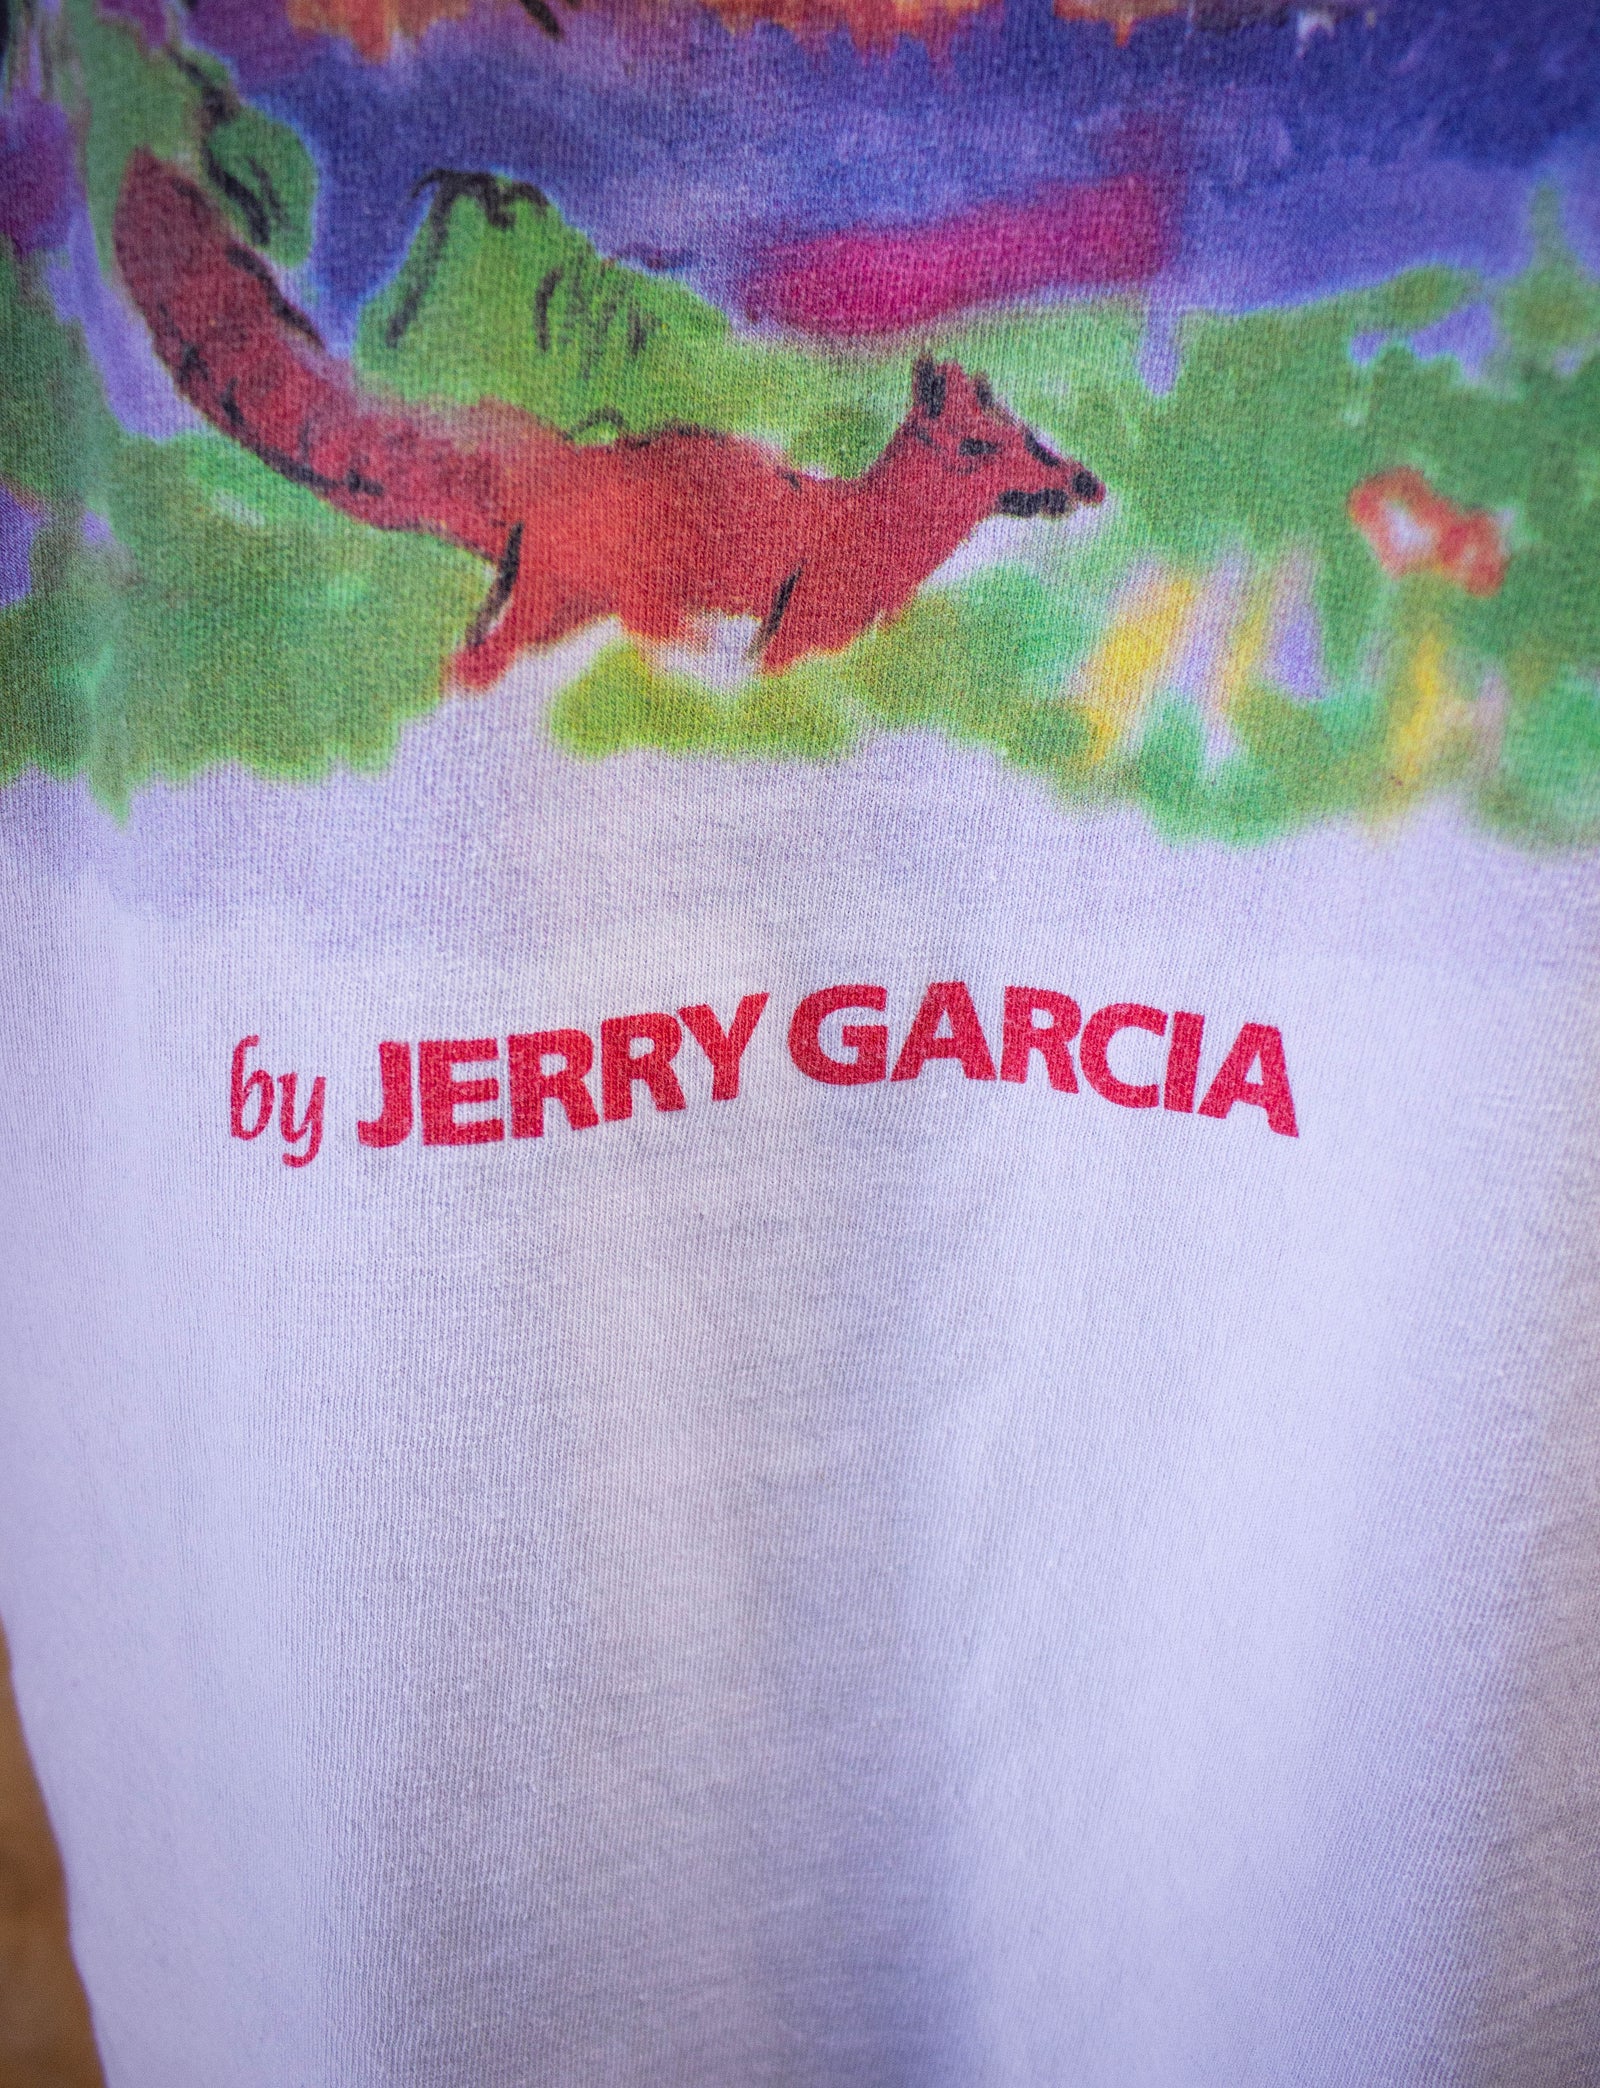 Vintage Jerry Garcia Grateful Dead Art Painting Graphic T-Shirt 1990s XL